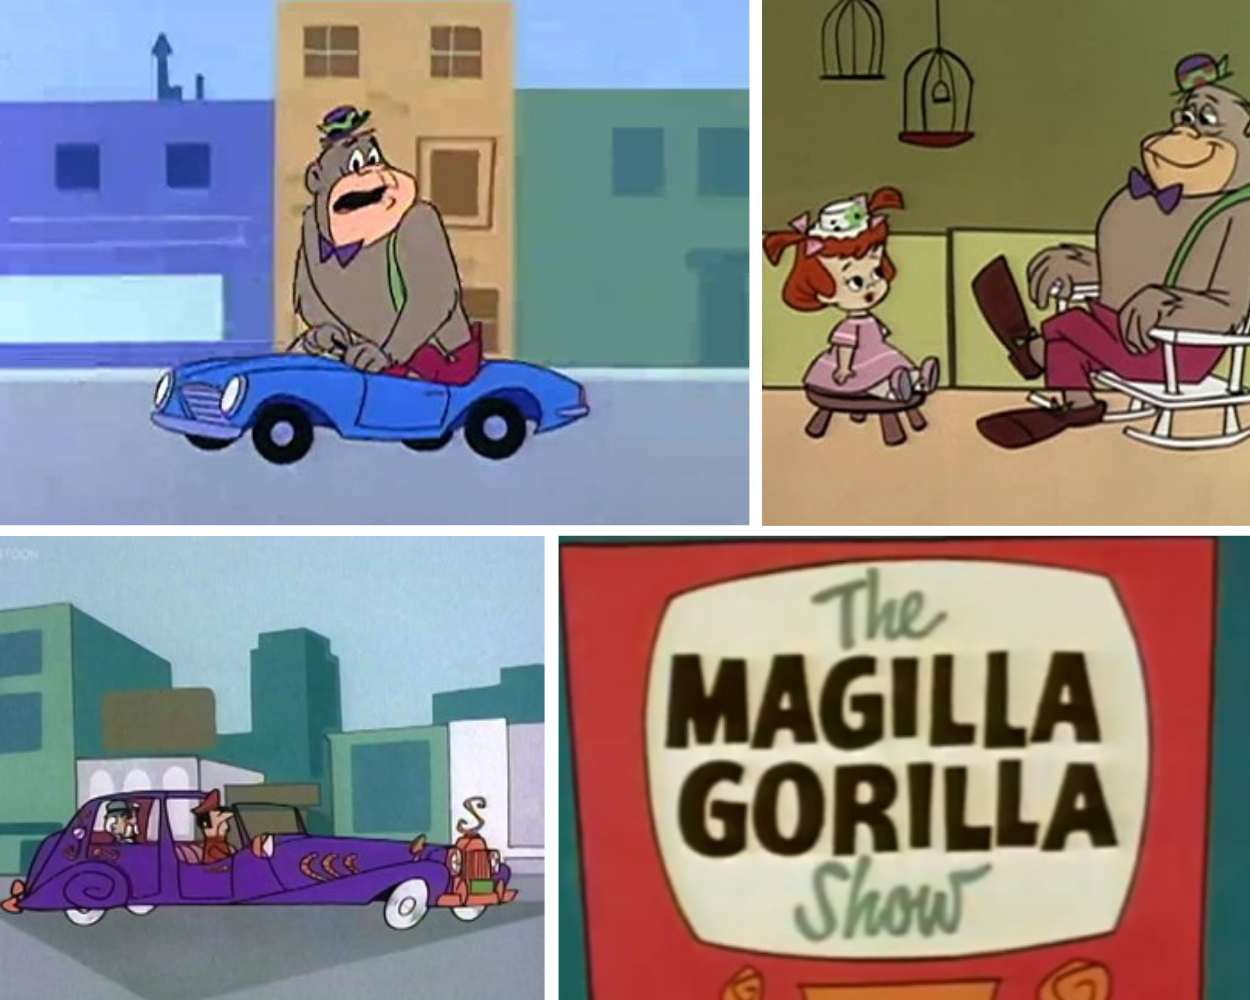 Magilla Gorilla and The Magilla Gorilla Show